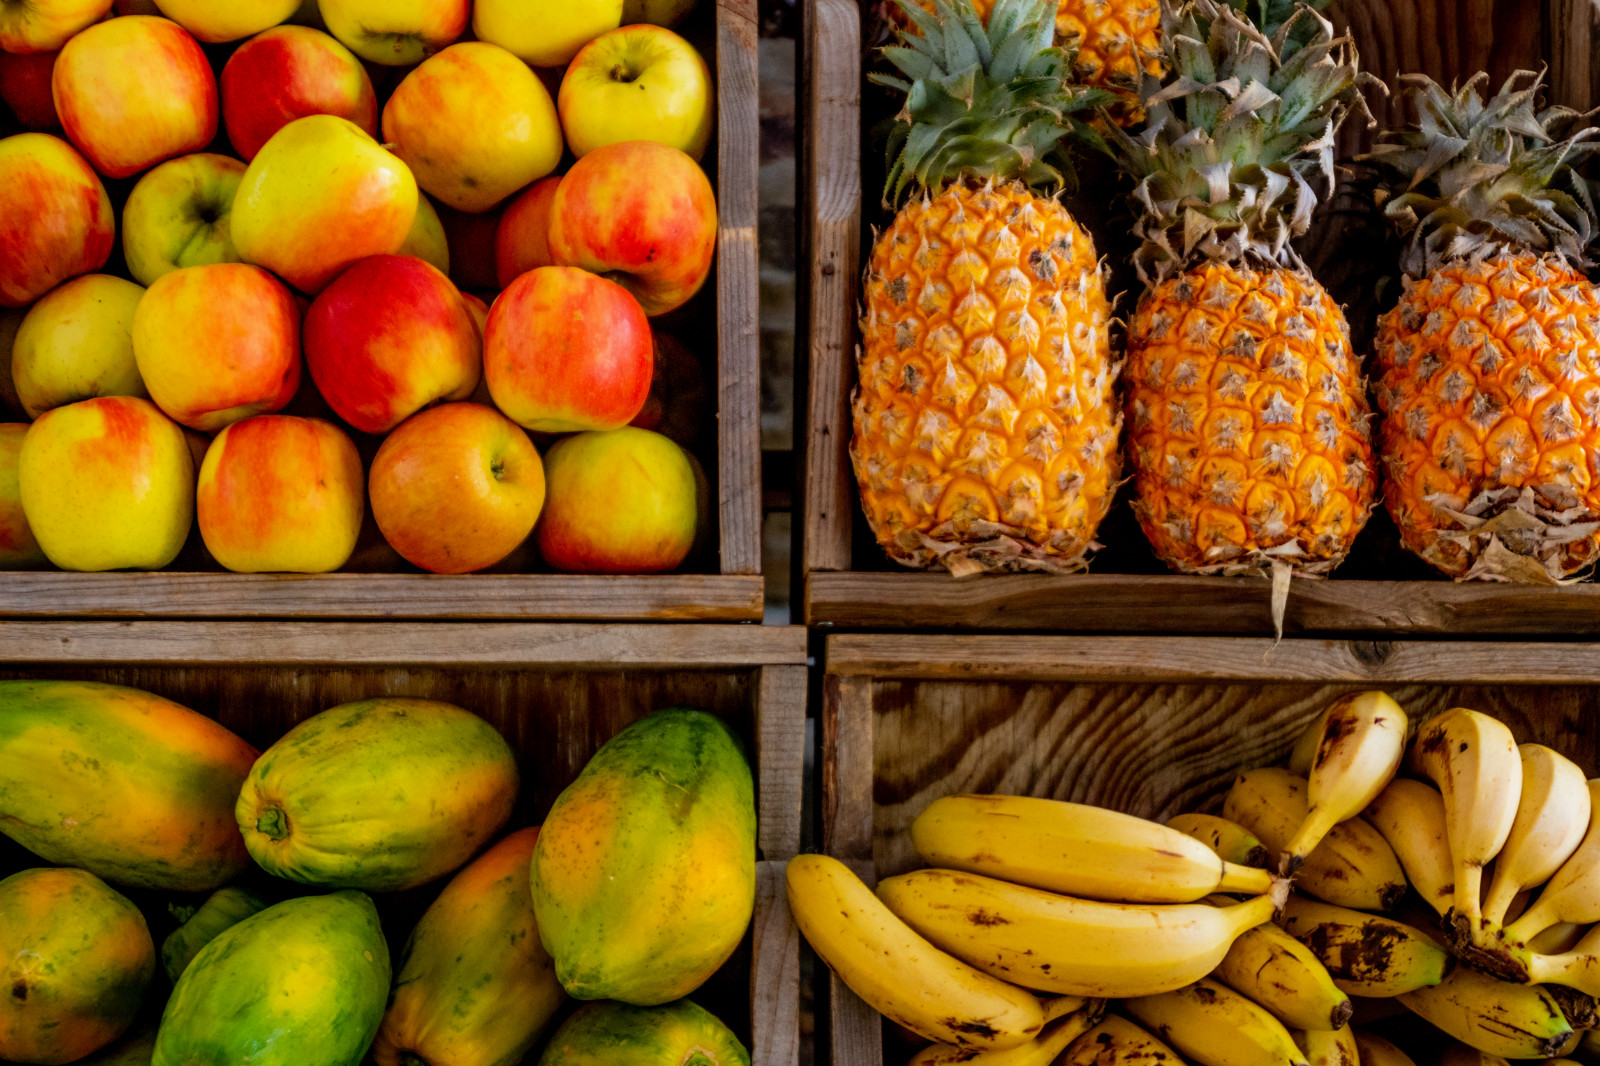 进口水果和国产水果都存在风险